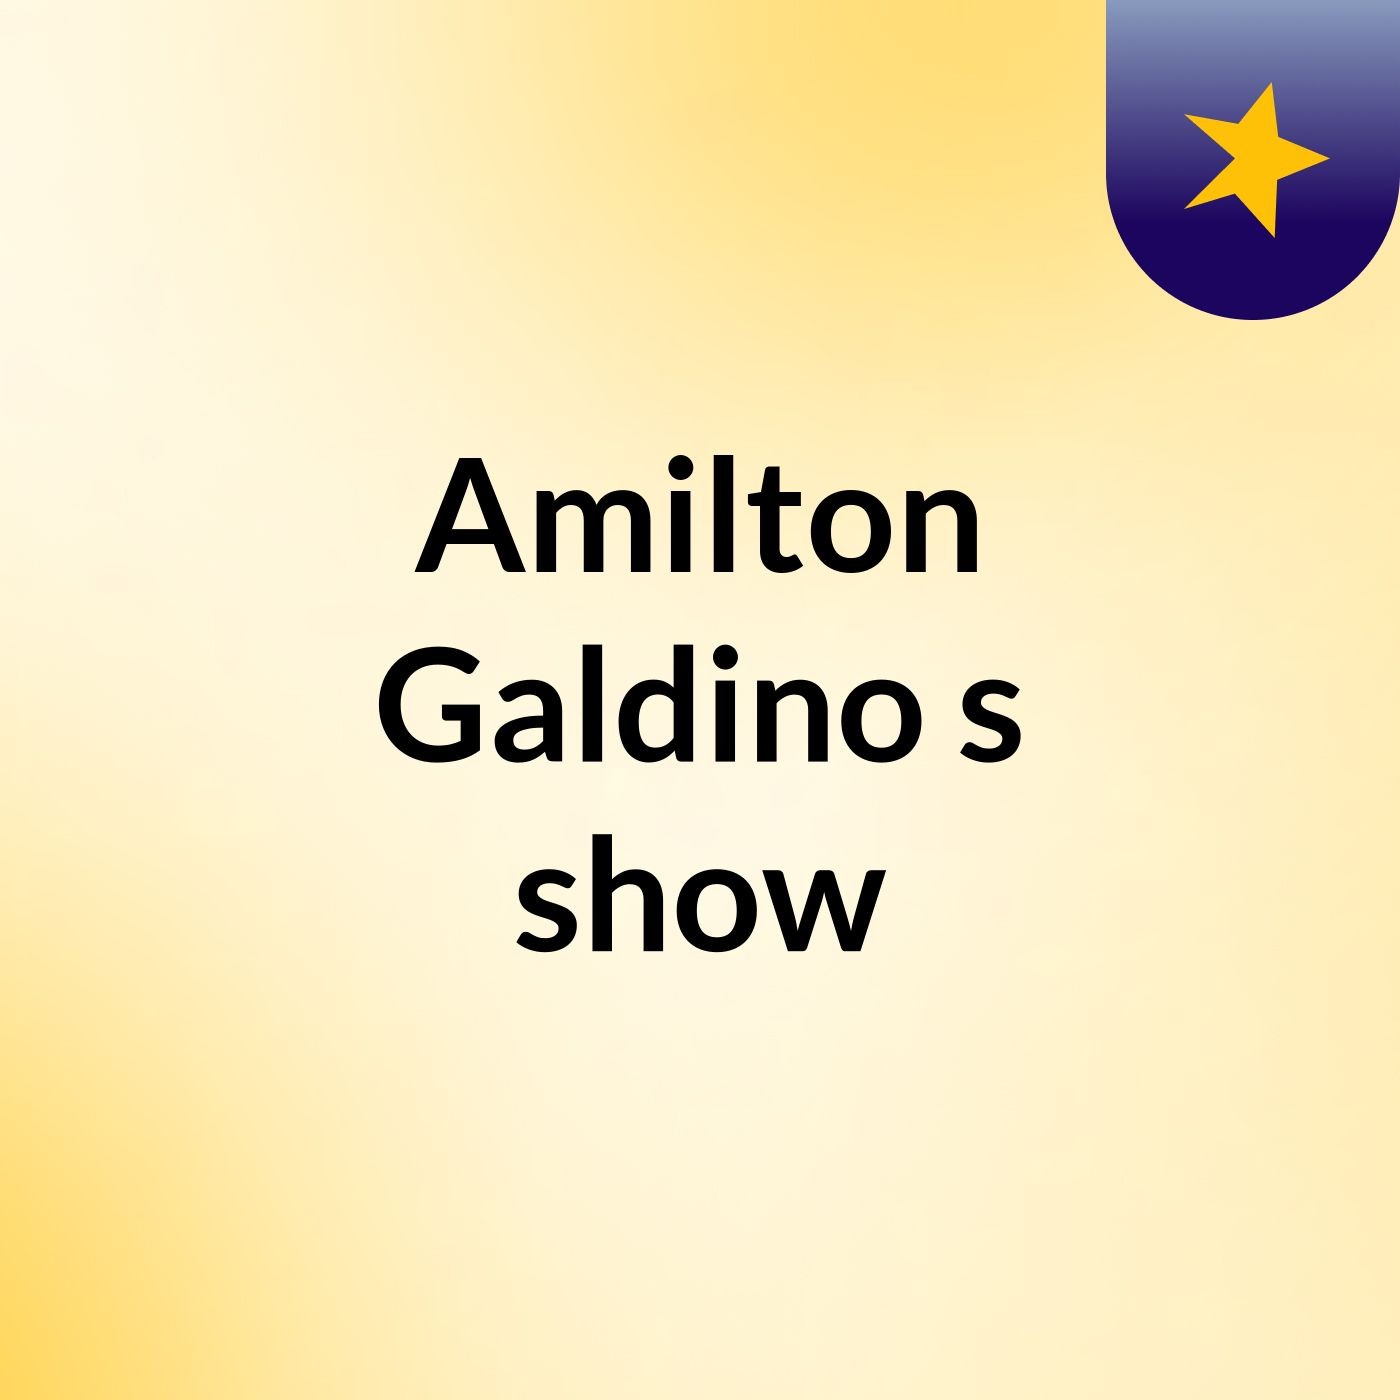 Amilton Galdino's show